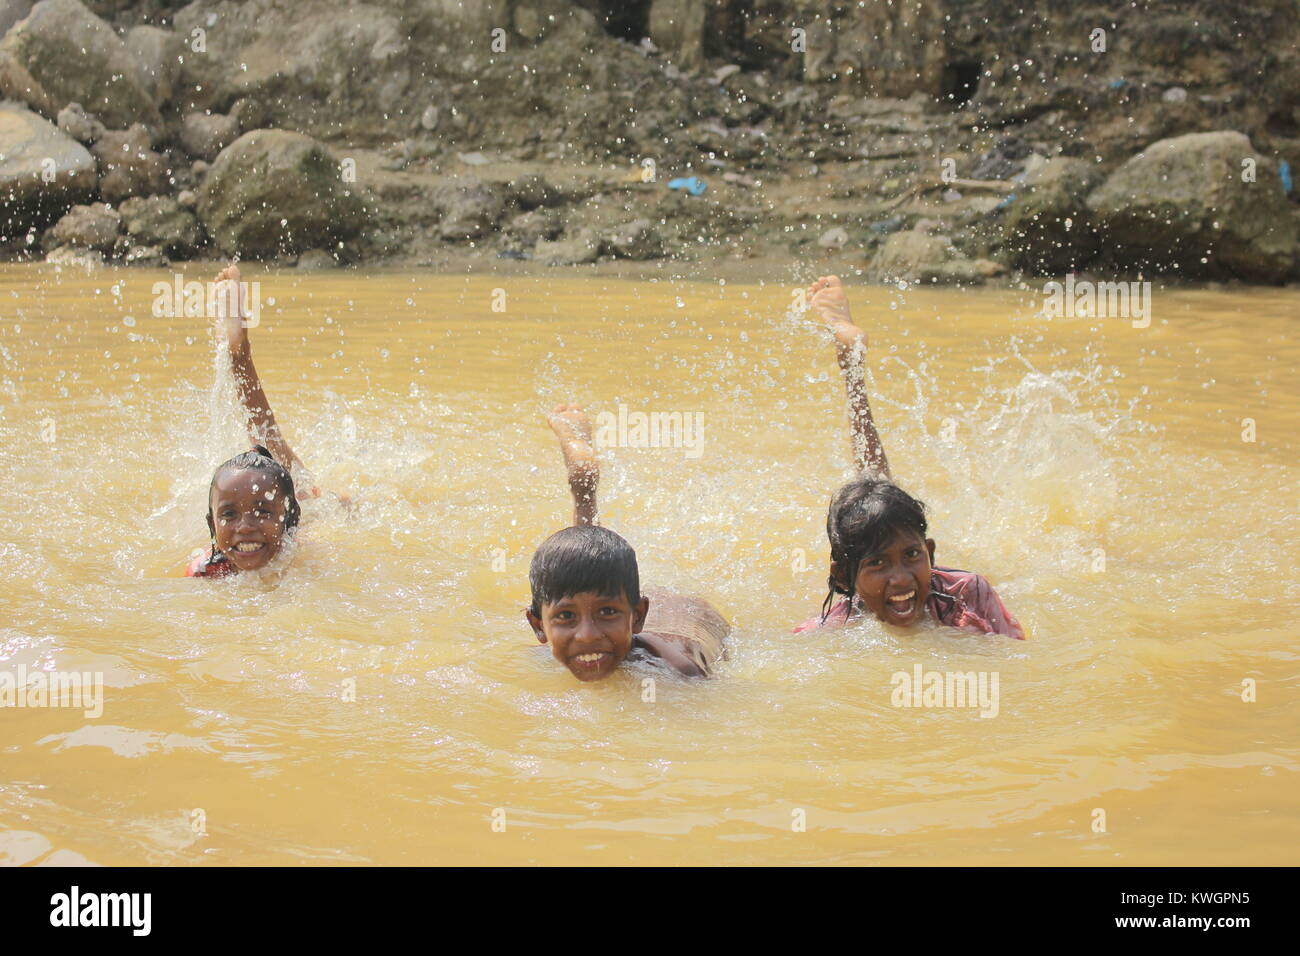 Novembre 22, 2017 - Cox's Bazar, Bangladesh - Rohingya i bambini rifugiati si vedono giocare in acqua sporca.Oltre 600.000 Rohingya rifugiati sono fuggiti dal Myanmar Stato di Rakhine fin dal mese di agosto 2017, come la maggior parte di loro di tenere cercando di attraversare la frontiera per raggiungere il Bangladesh ogni giorno. Credito: Asif Ahmed/SOPA/ZUMA filo/Alamy Live News Foto Stock